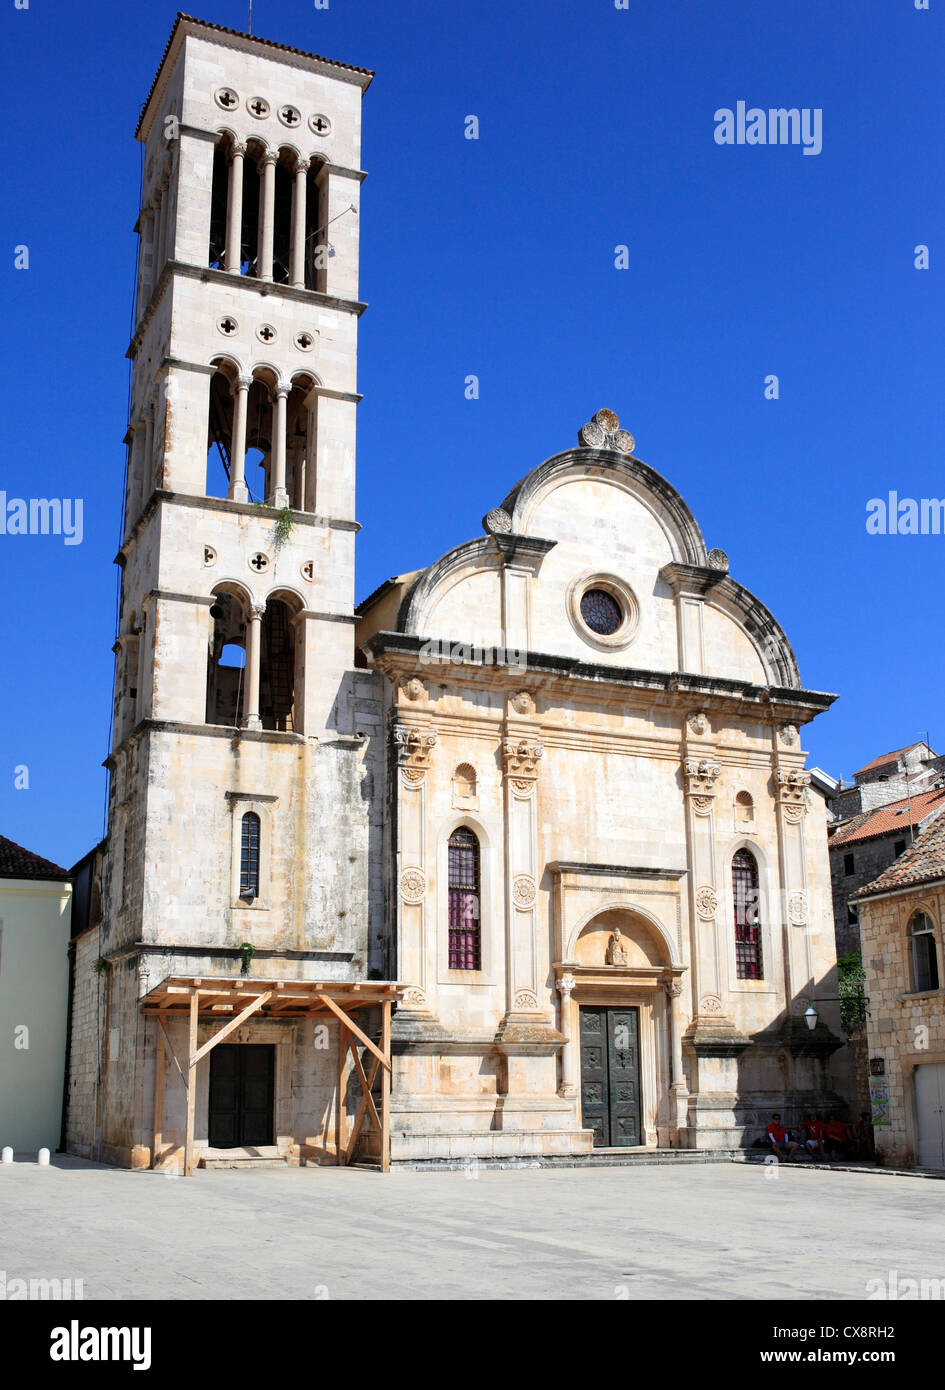 Cathédrale de Sv. Stjepan (St. Stephen), place centrale (Pjaca), la ville de Hvar, île de Hvar, Croatie, la côte dalmate Banque D'Images